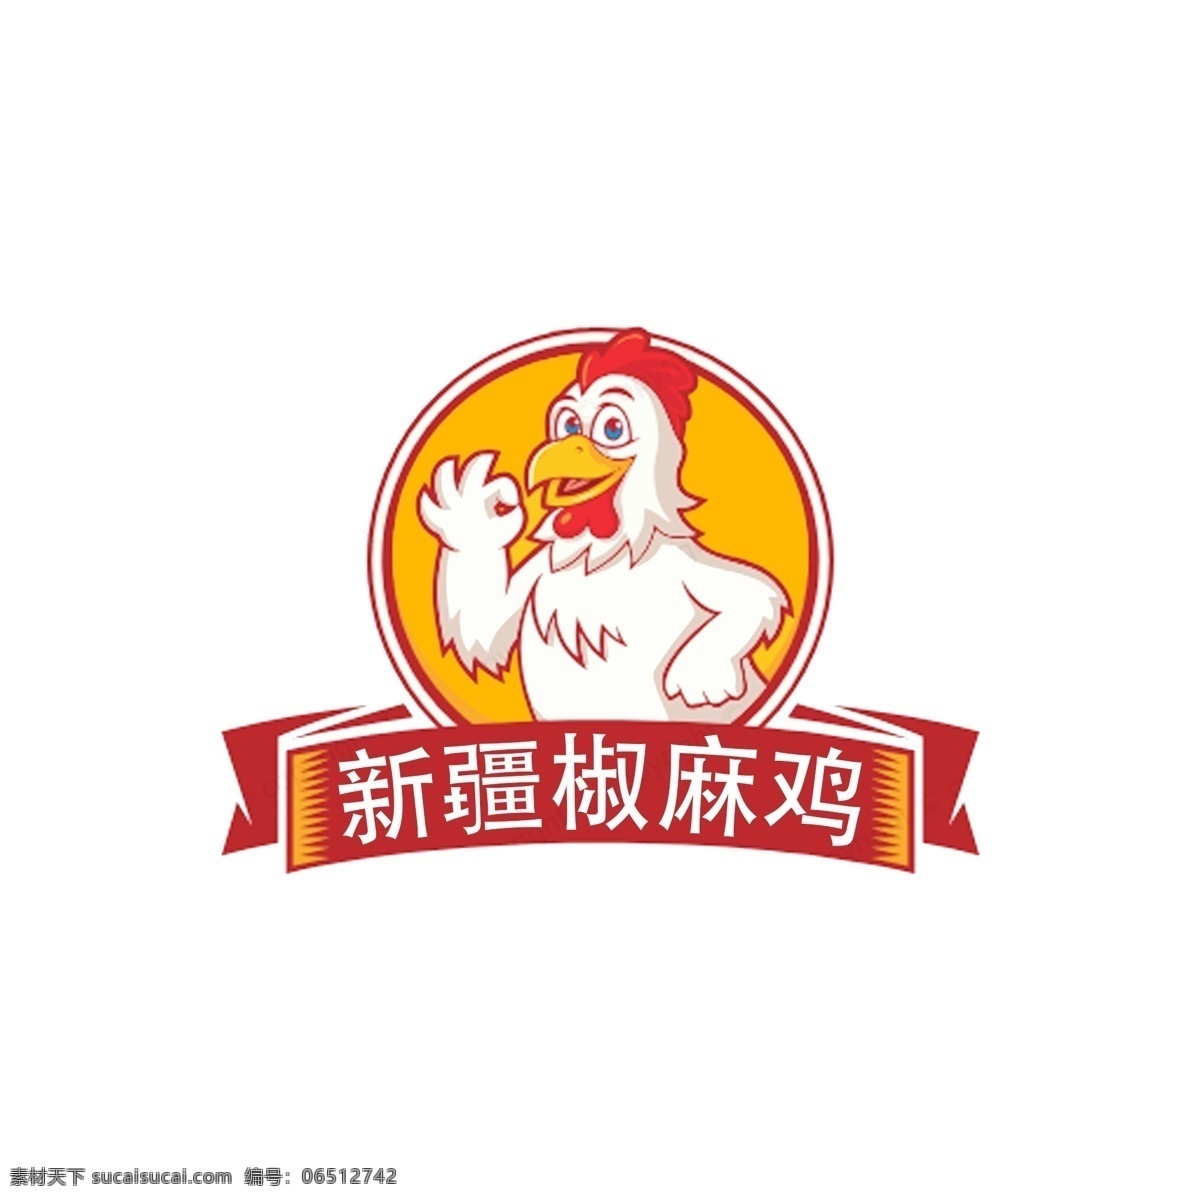 新疆椒麻鸡 椒麻鸡 美食 logo 美团头像 logo设计